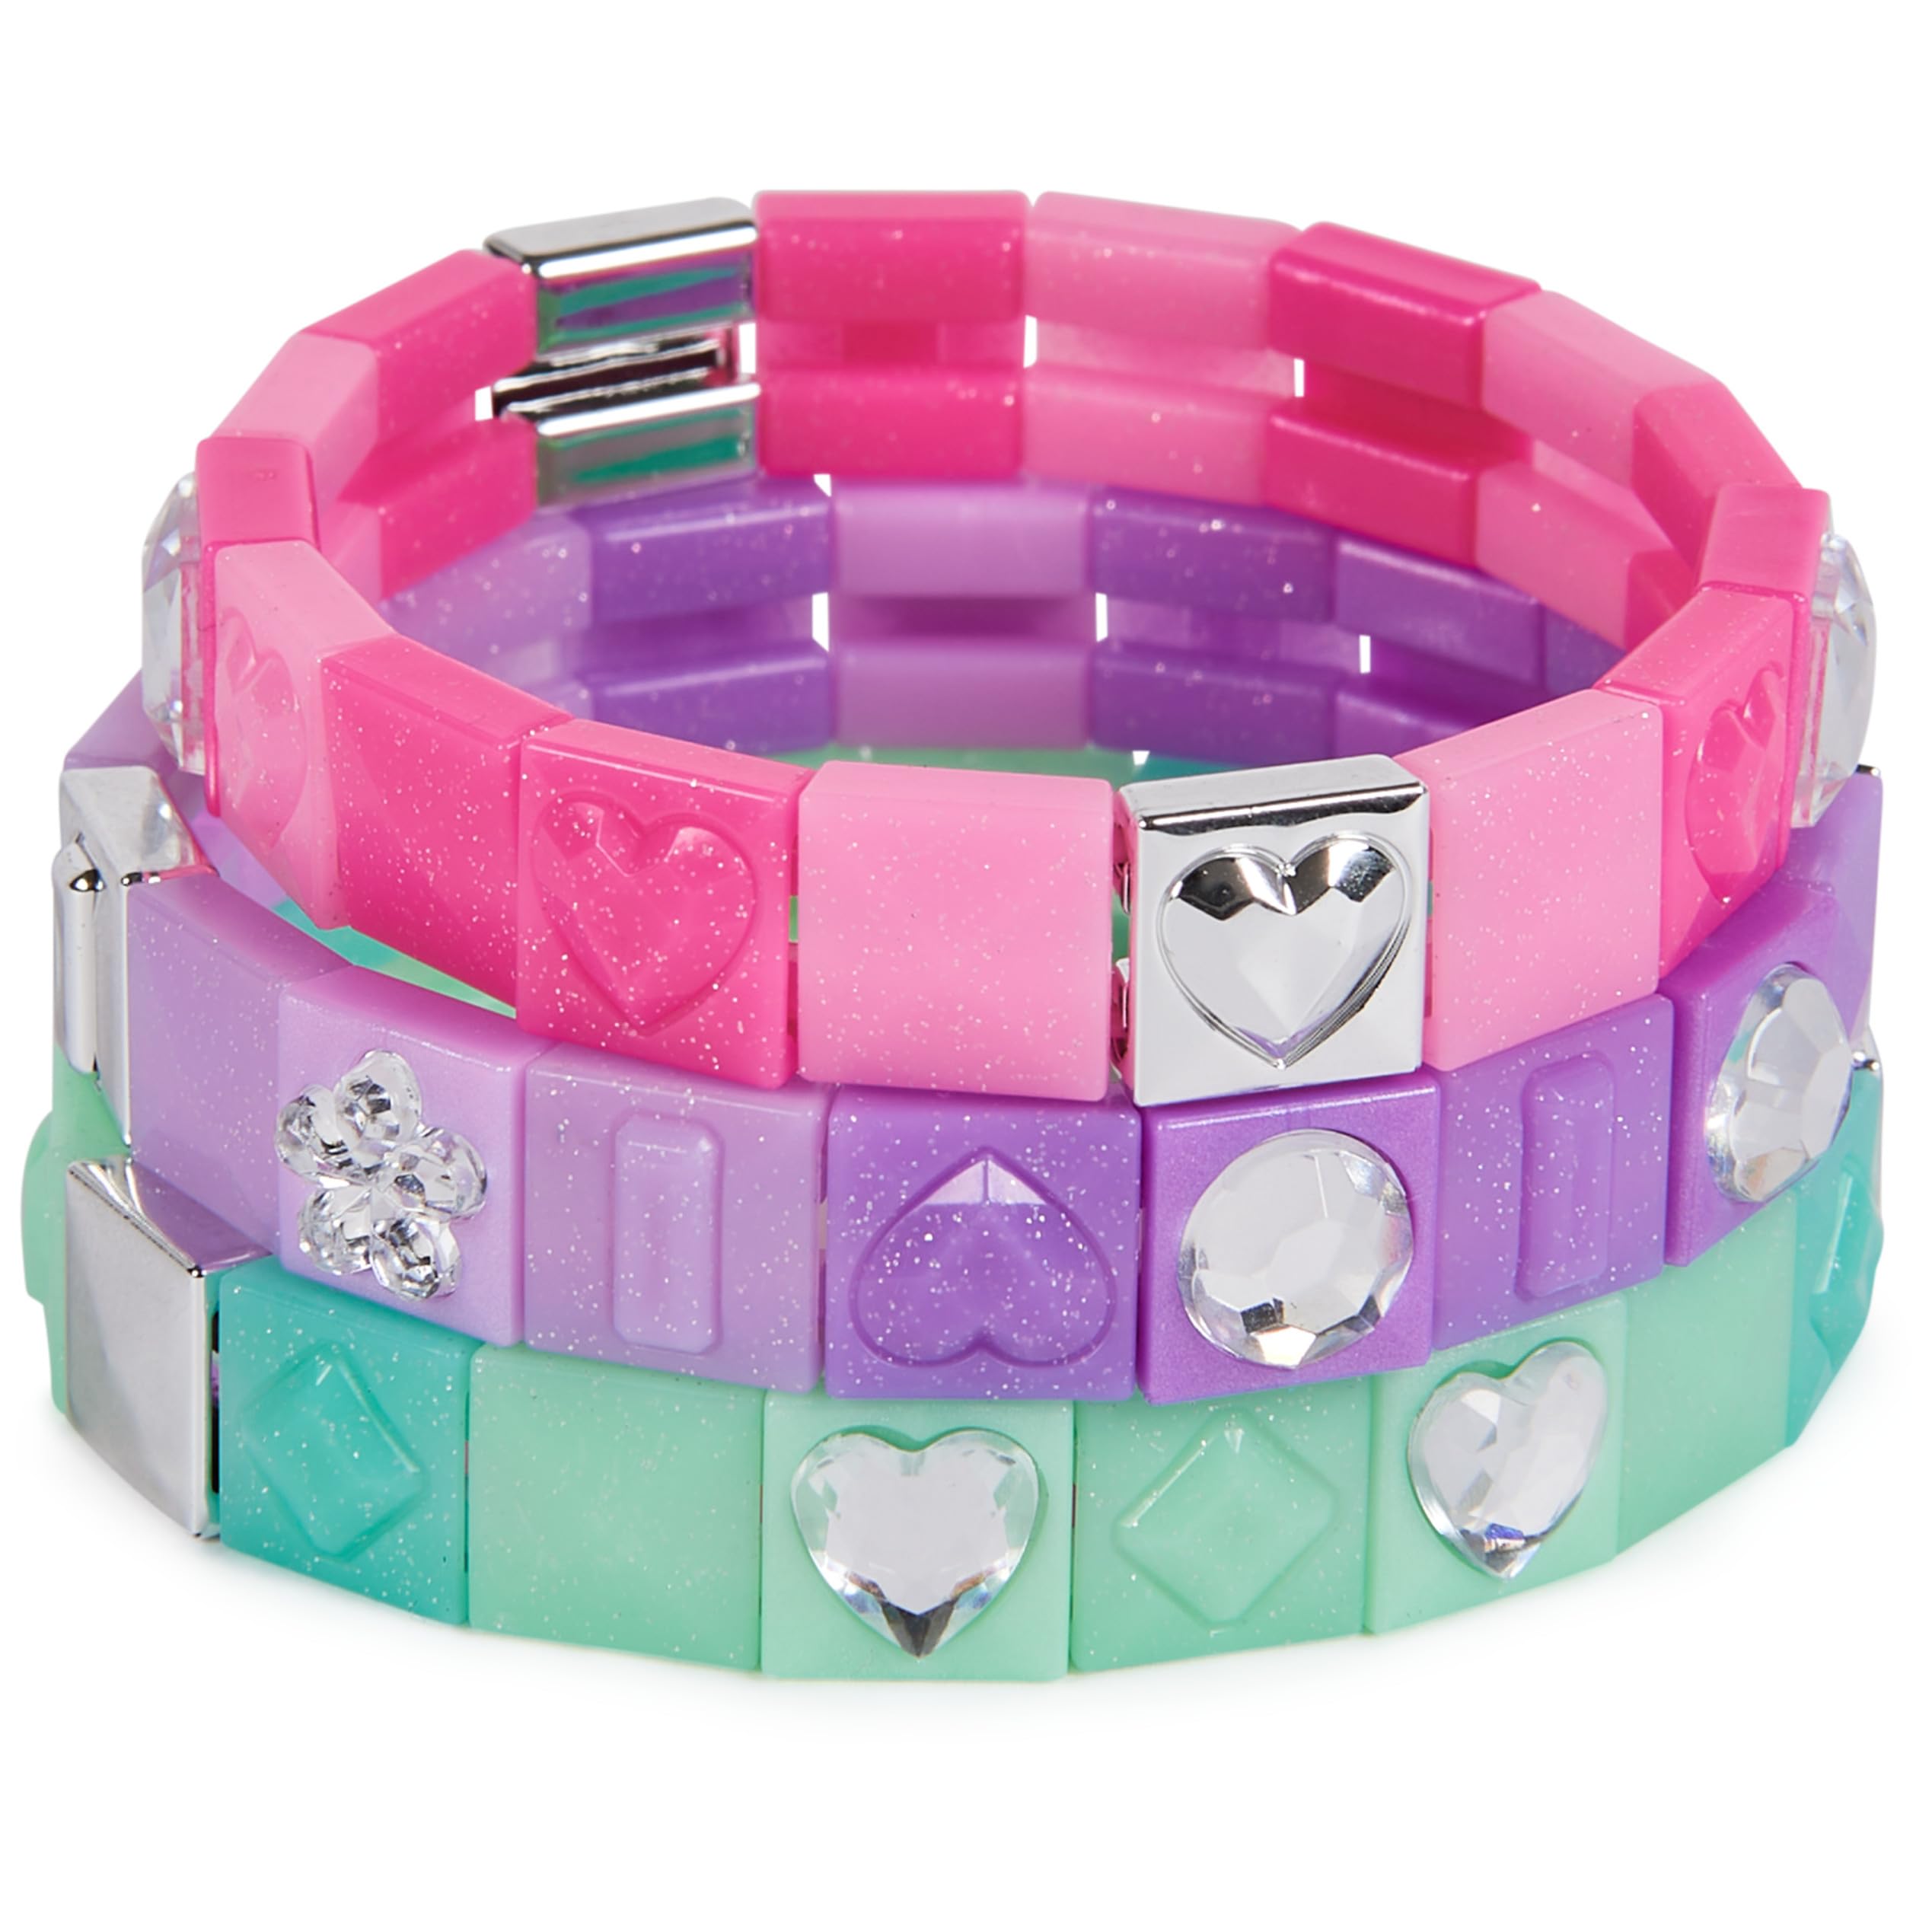 Cool Maker PopStyle Bracelet Maker Expansion Pack, 50+ Gem Beads, 3 Friendship Bracelets, Bracelet Making Kit, DIY Arts & Crafts Kids Toys for Girls